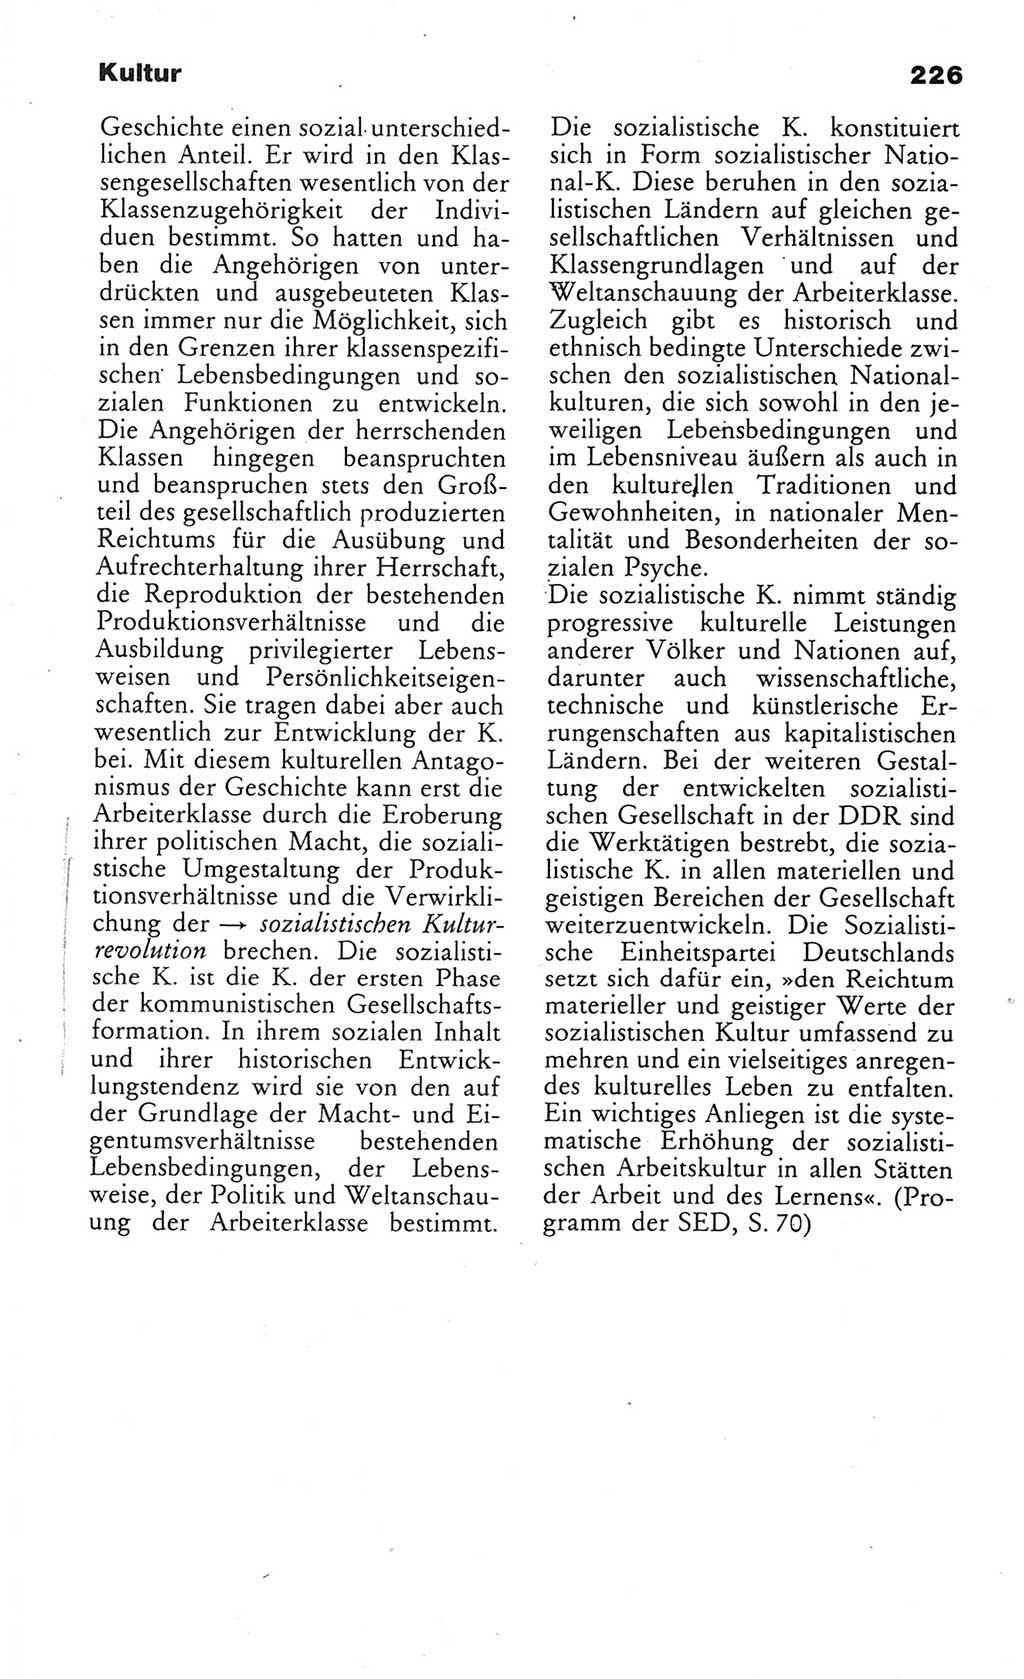 Wörterbuch des wissenschaftlichen Kommunismus [Deutsche Demokratische Republik (DDR)] 1984, Seite 226 (Wb. wiss. Komm. DDR 1984, S. 226)